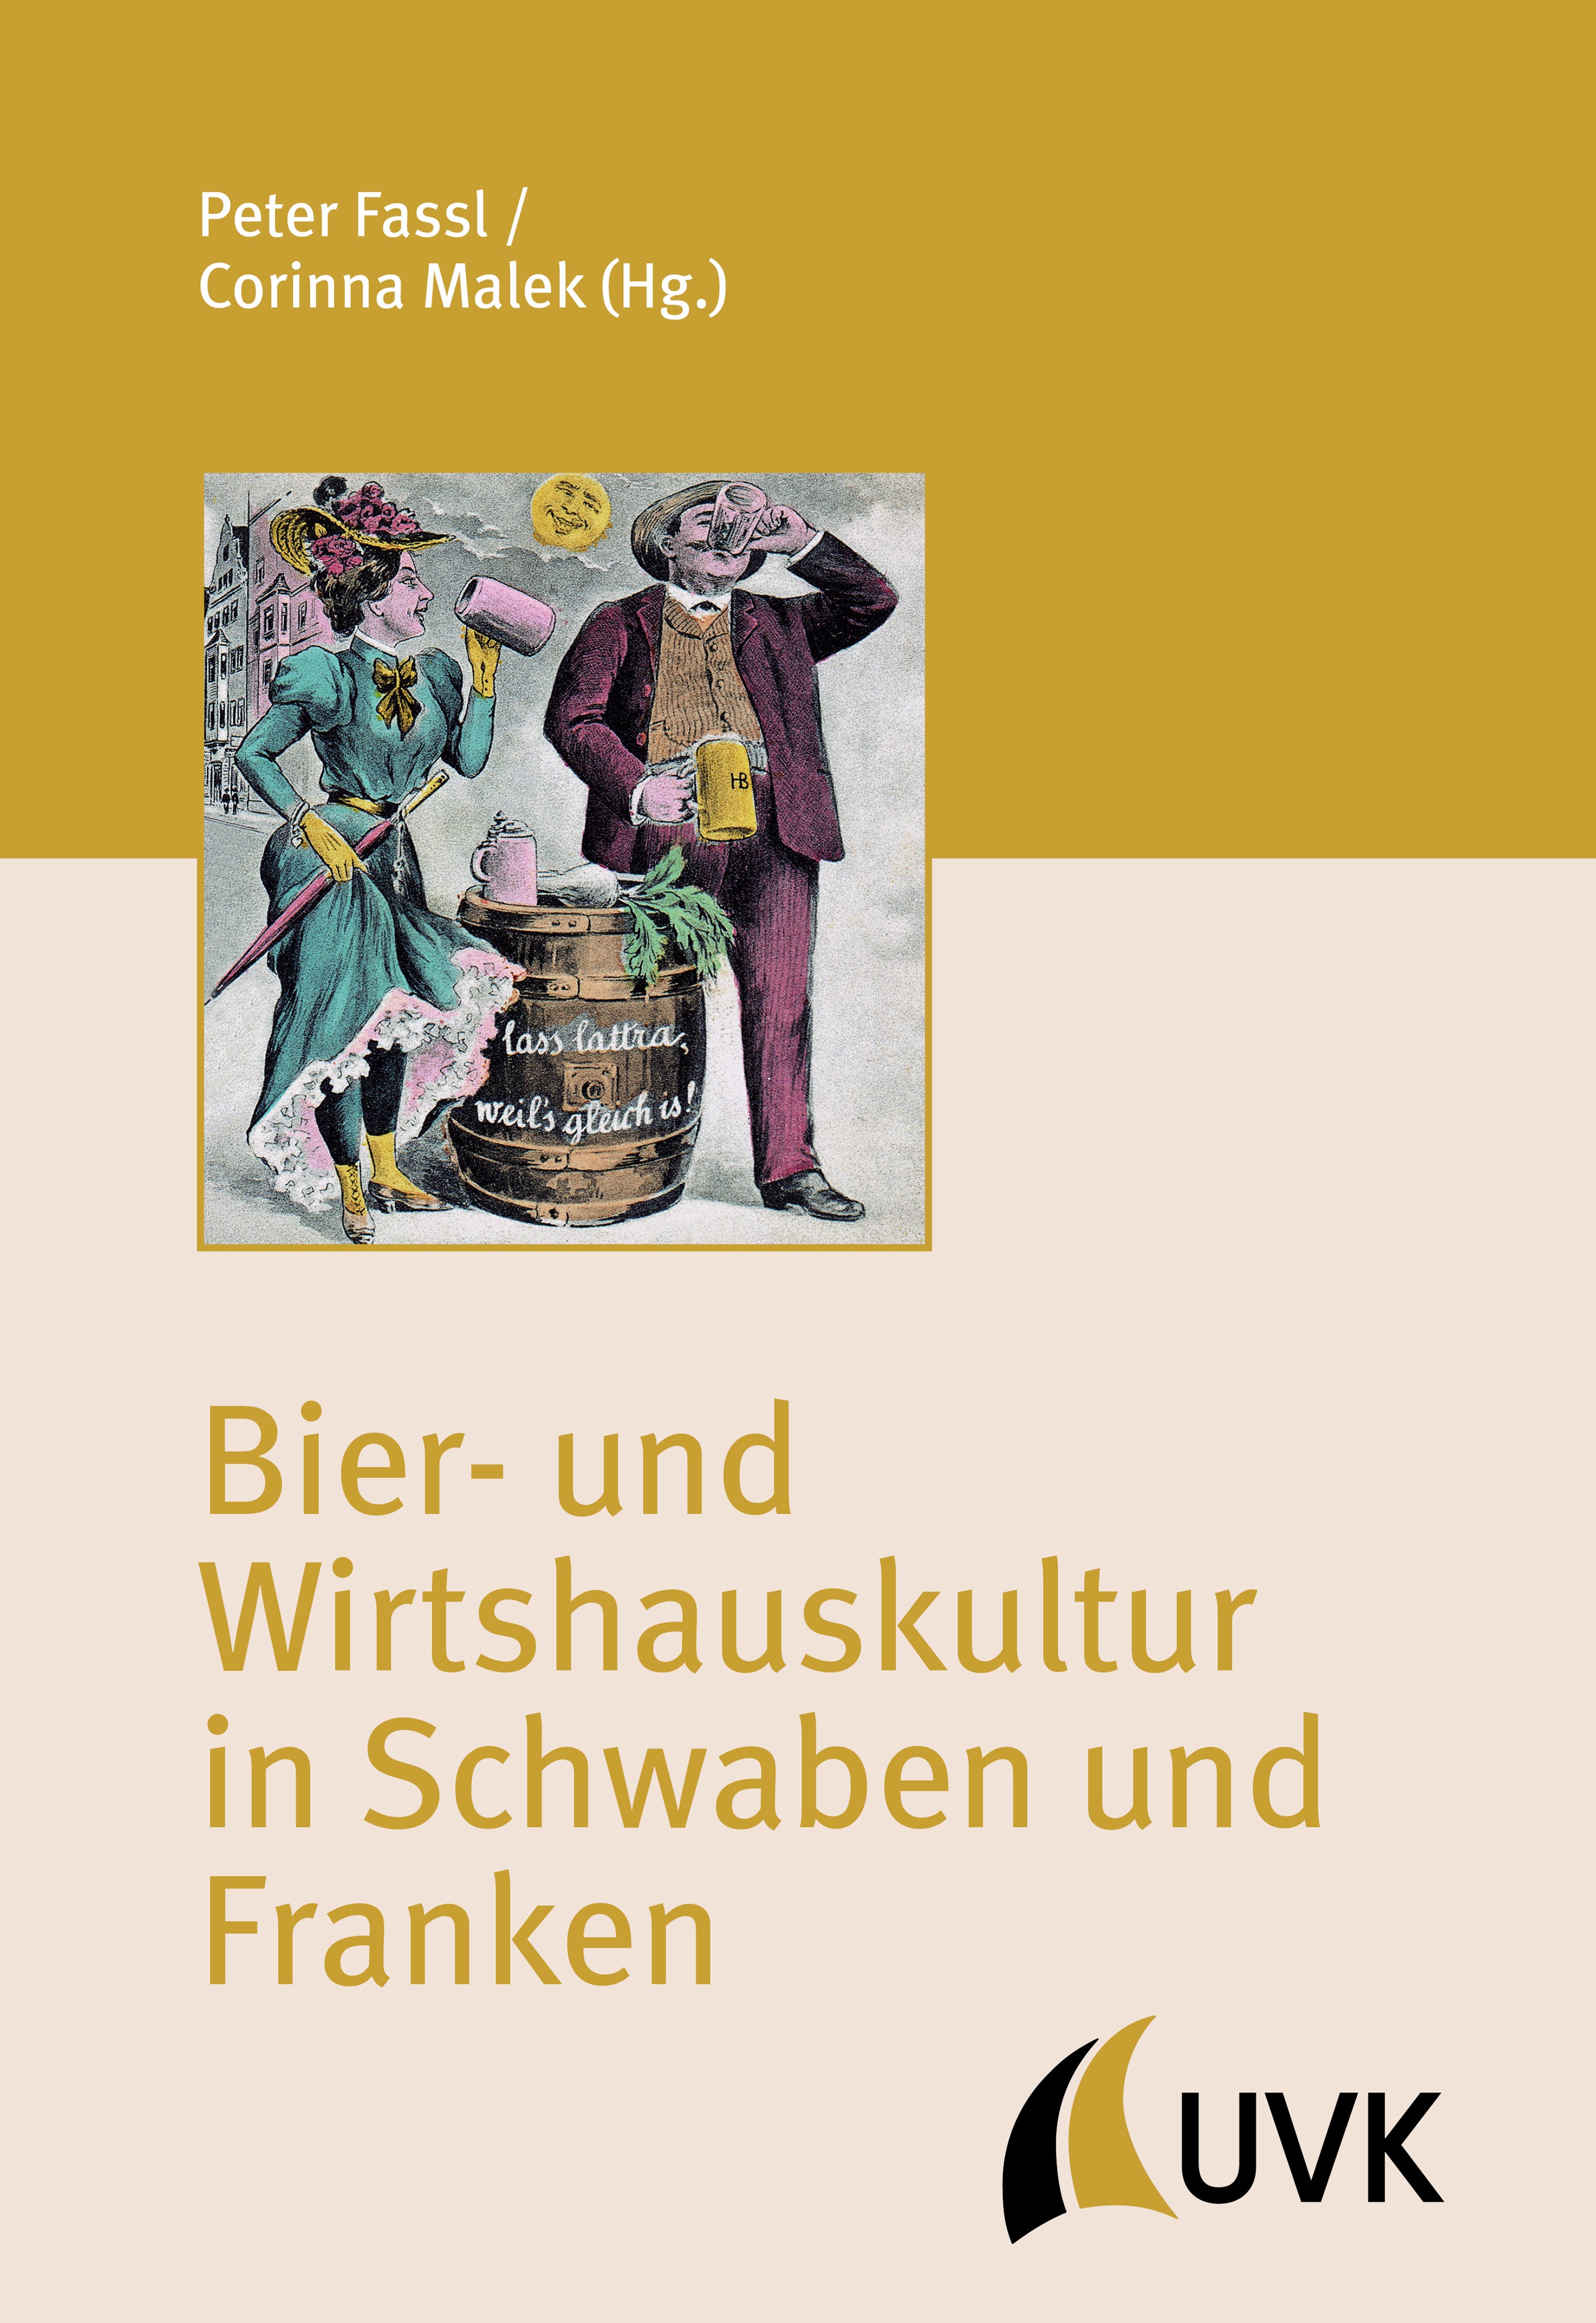 Bezirksheimatpflege feiert Schwäbische Bierkultur in Kemptener KulturWIRtschaft 